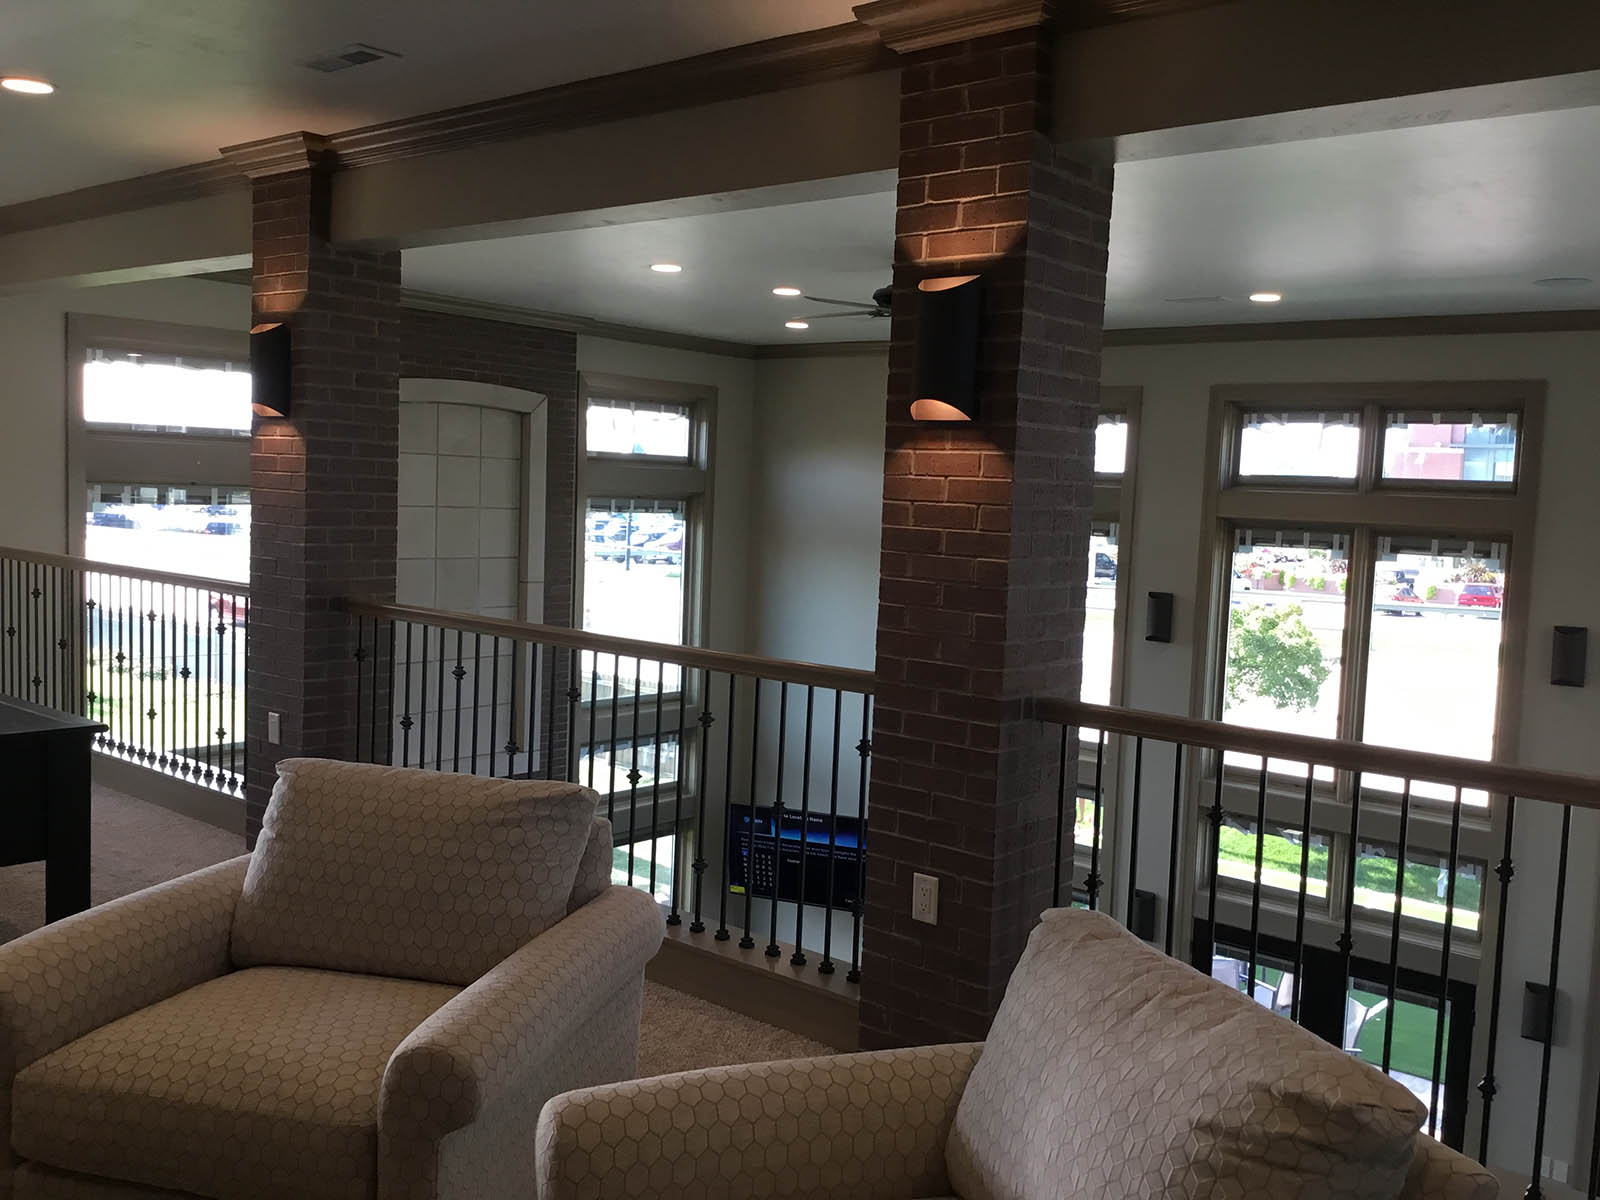 Light fixtures installed on brick pillars